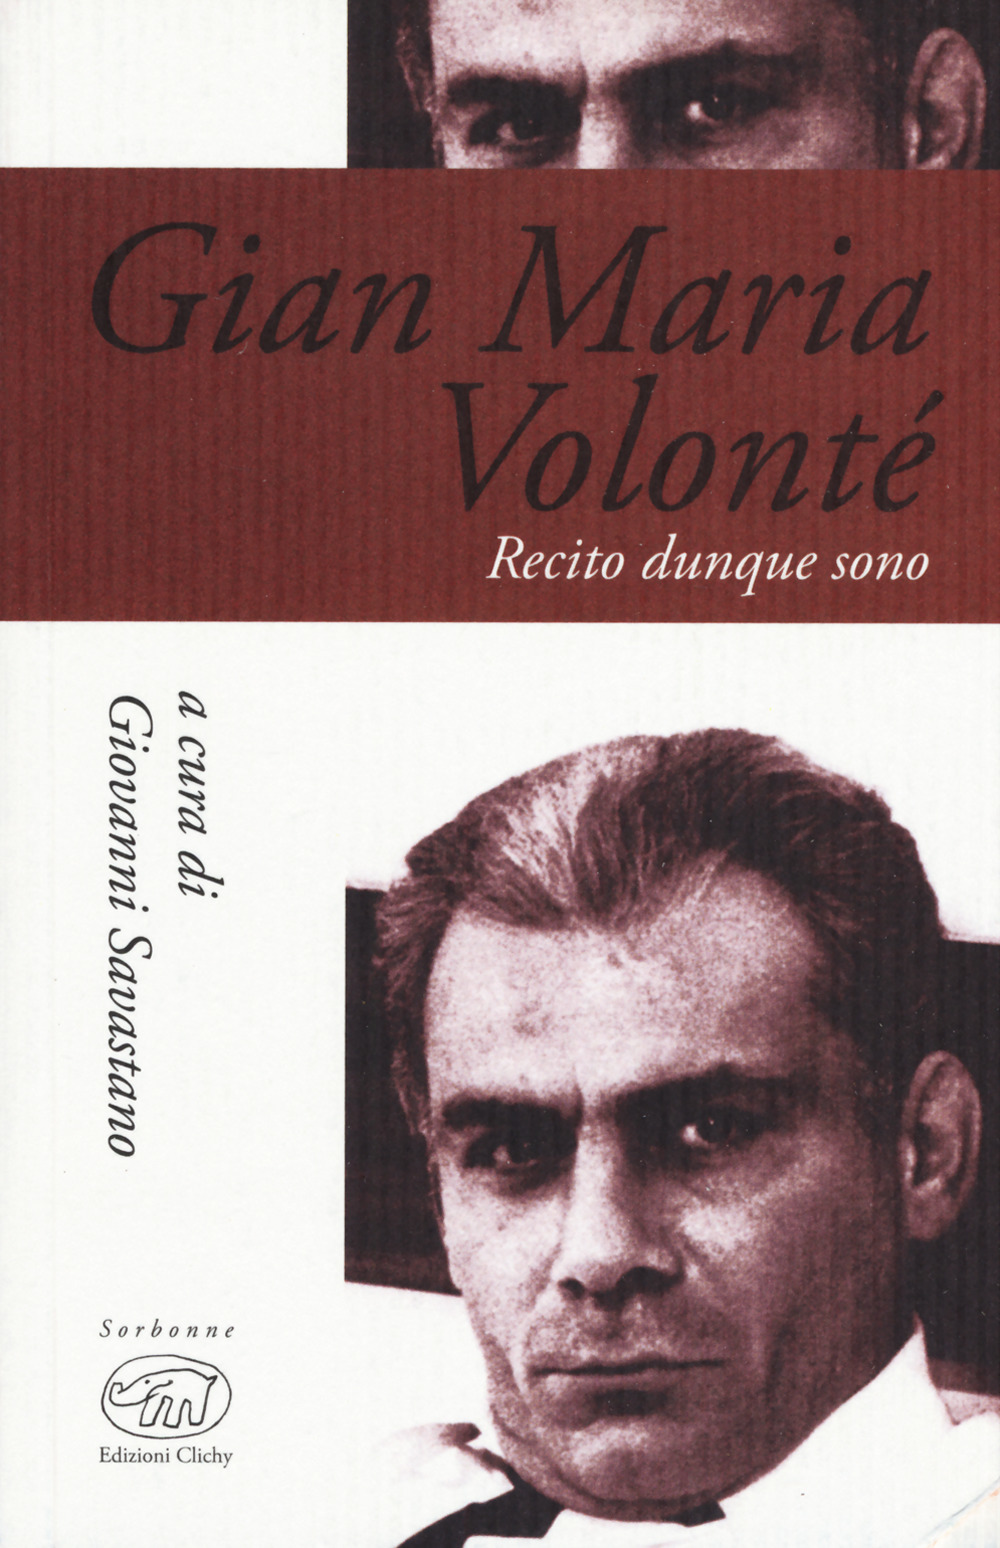 Gian Maria Volonté. Recito dunque sono